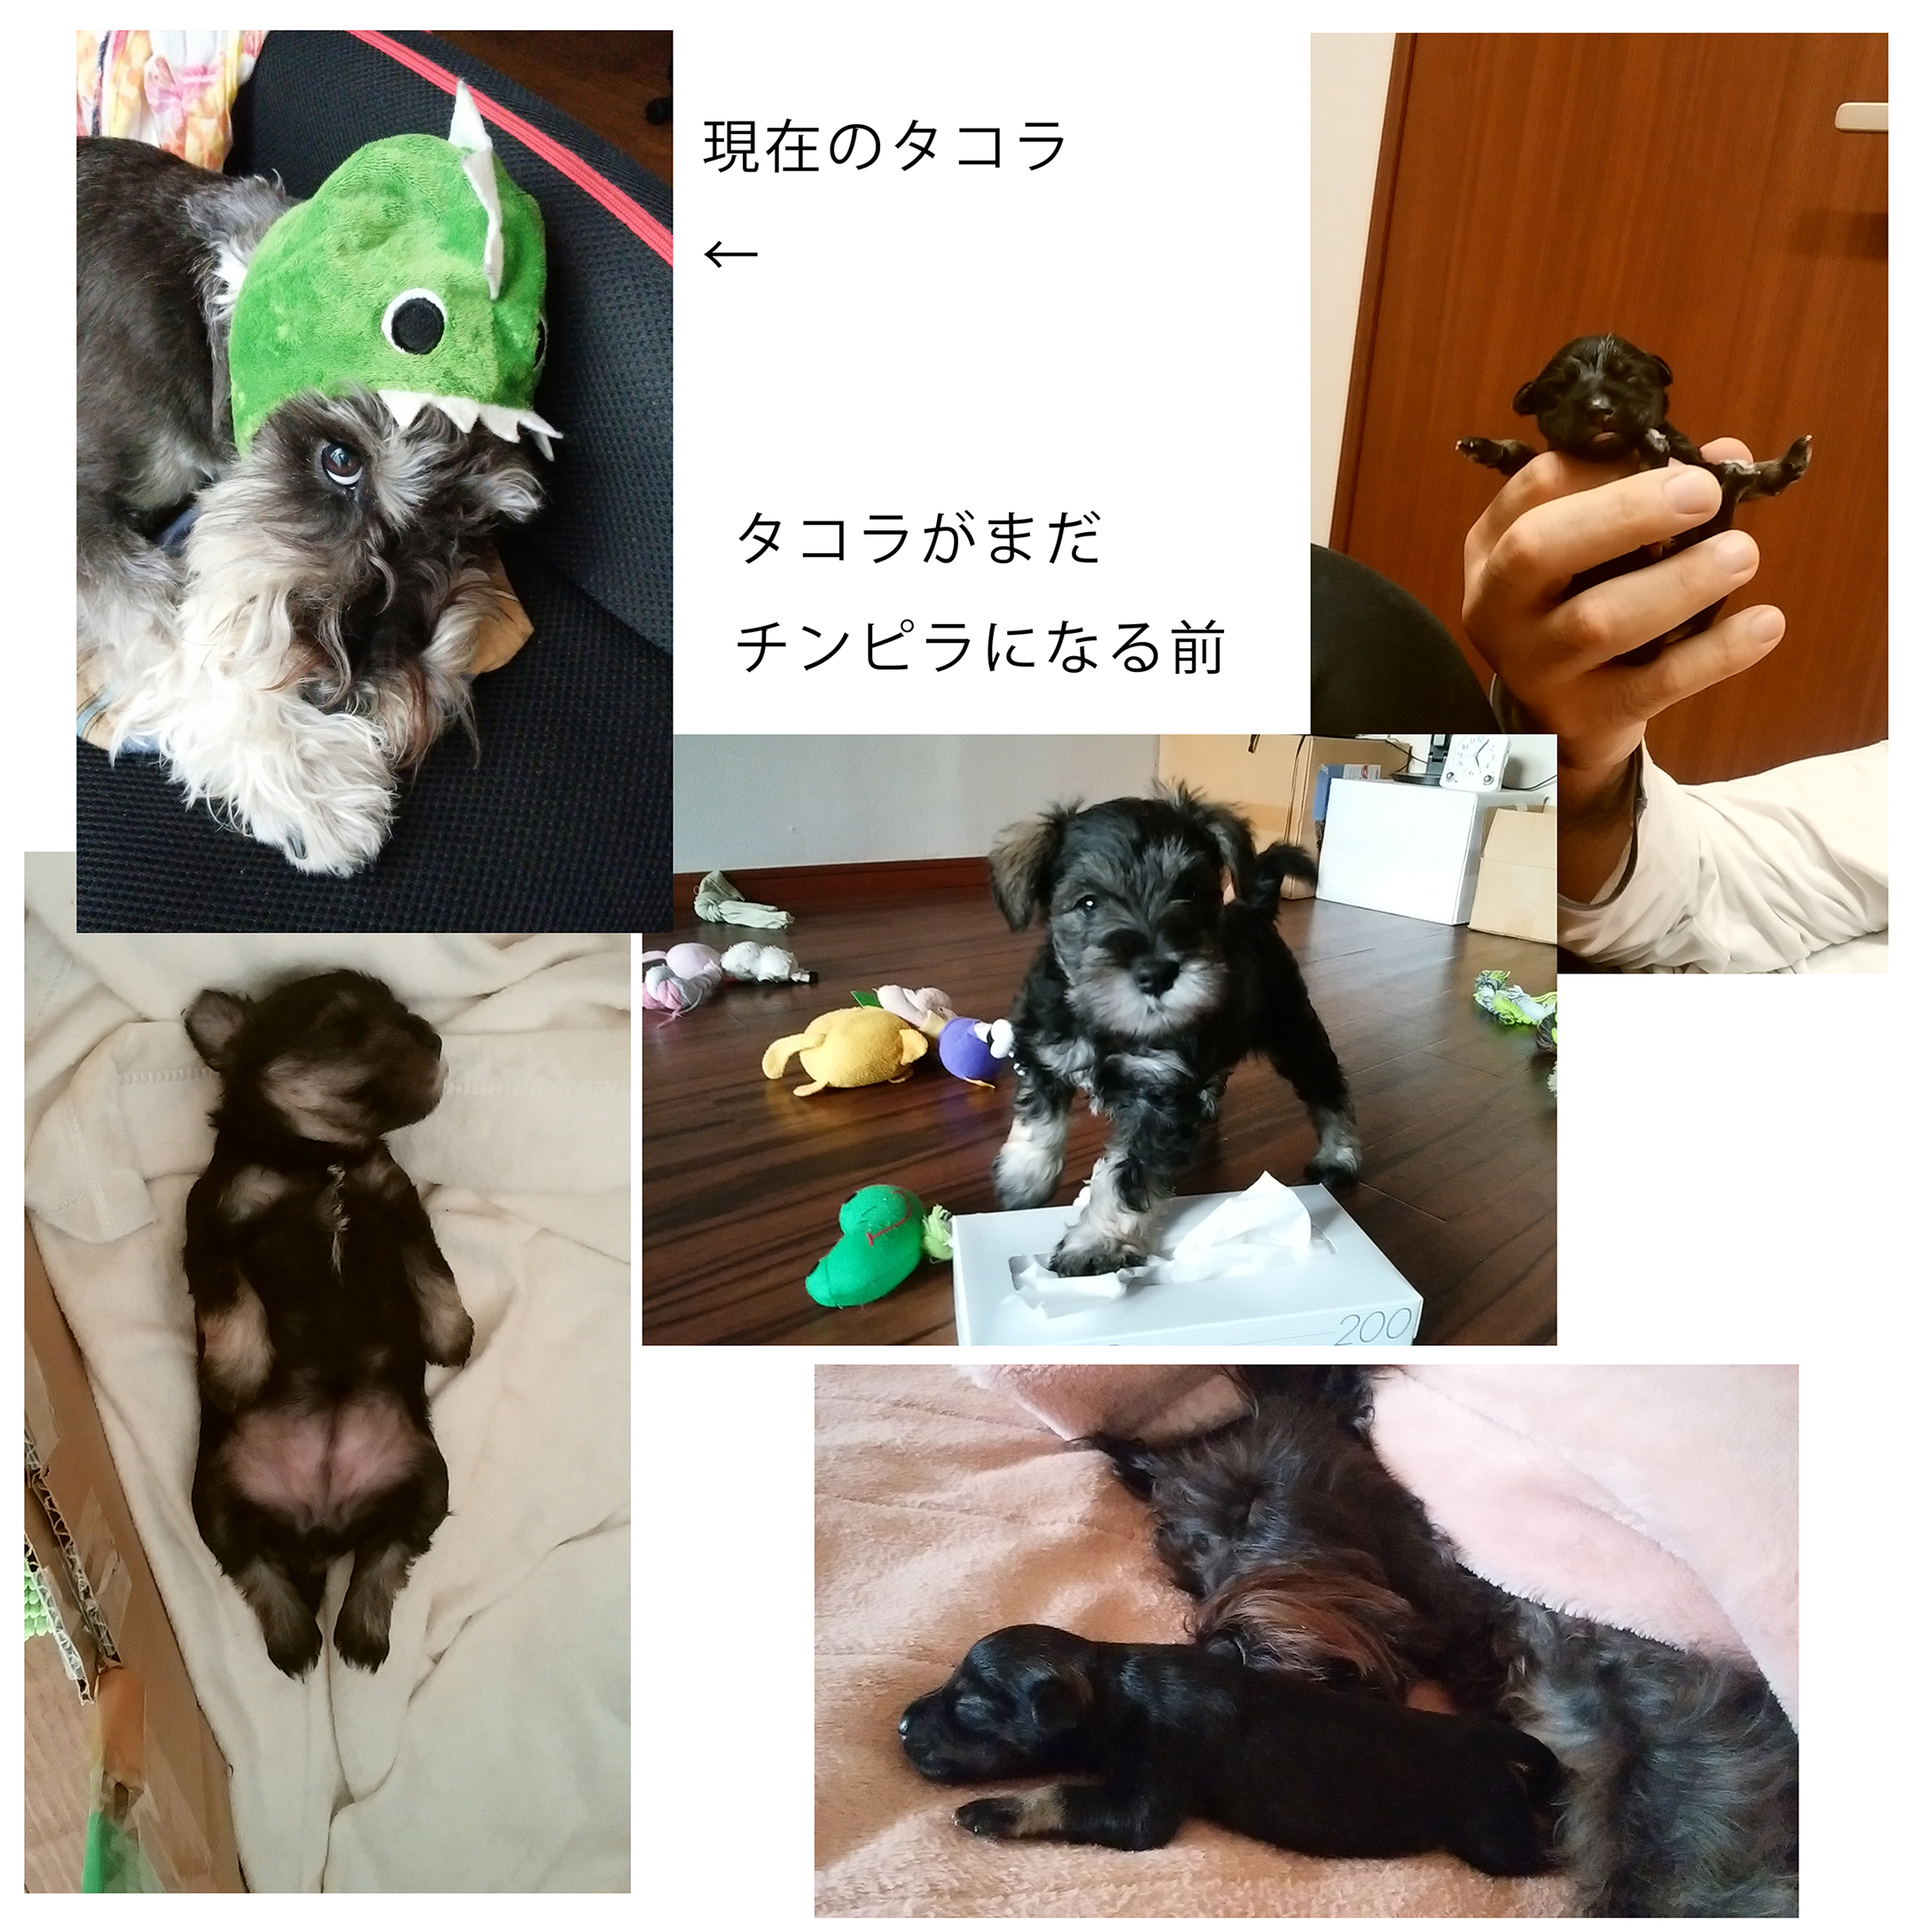 チンピラ犬タコちゃん、犬嫌いは治るのか〜no.5